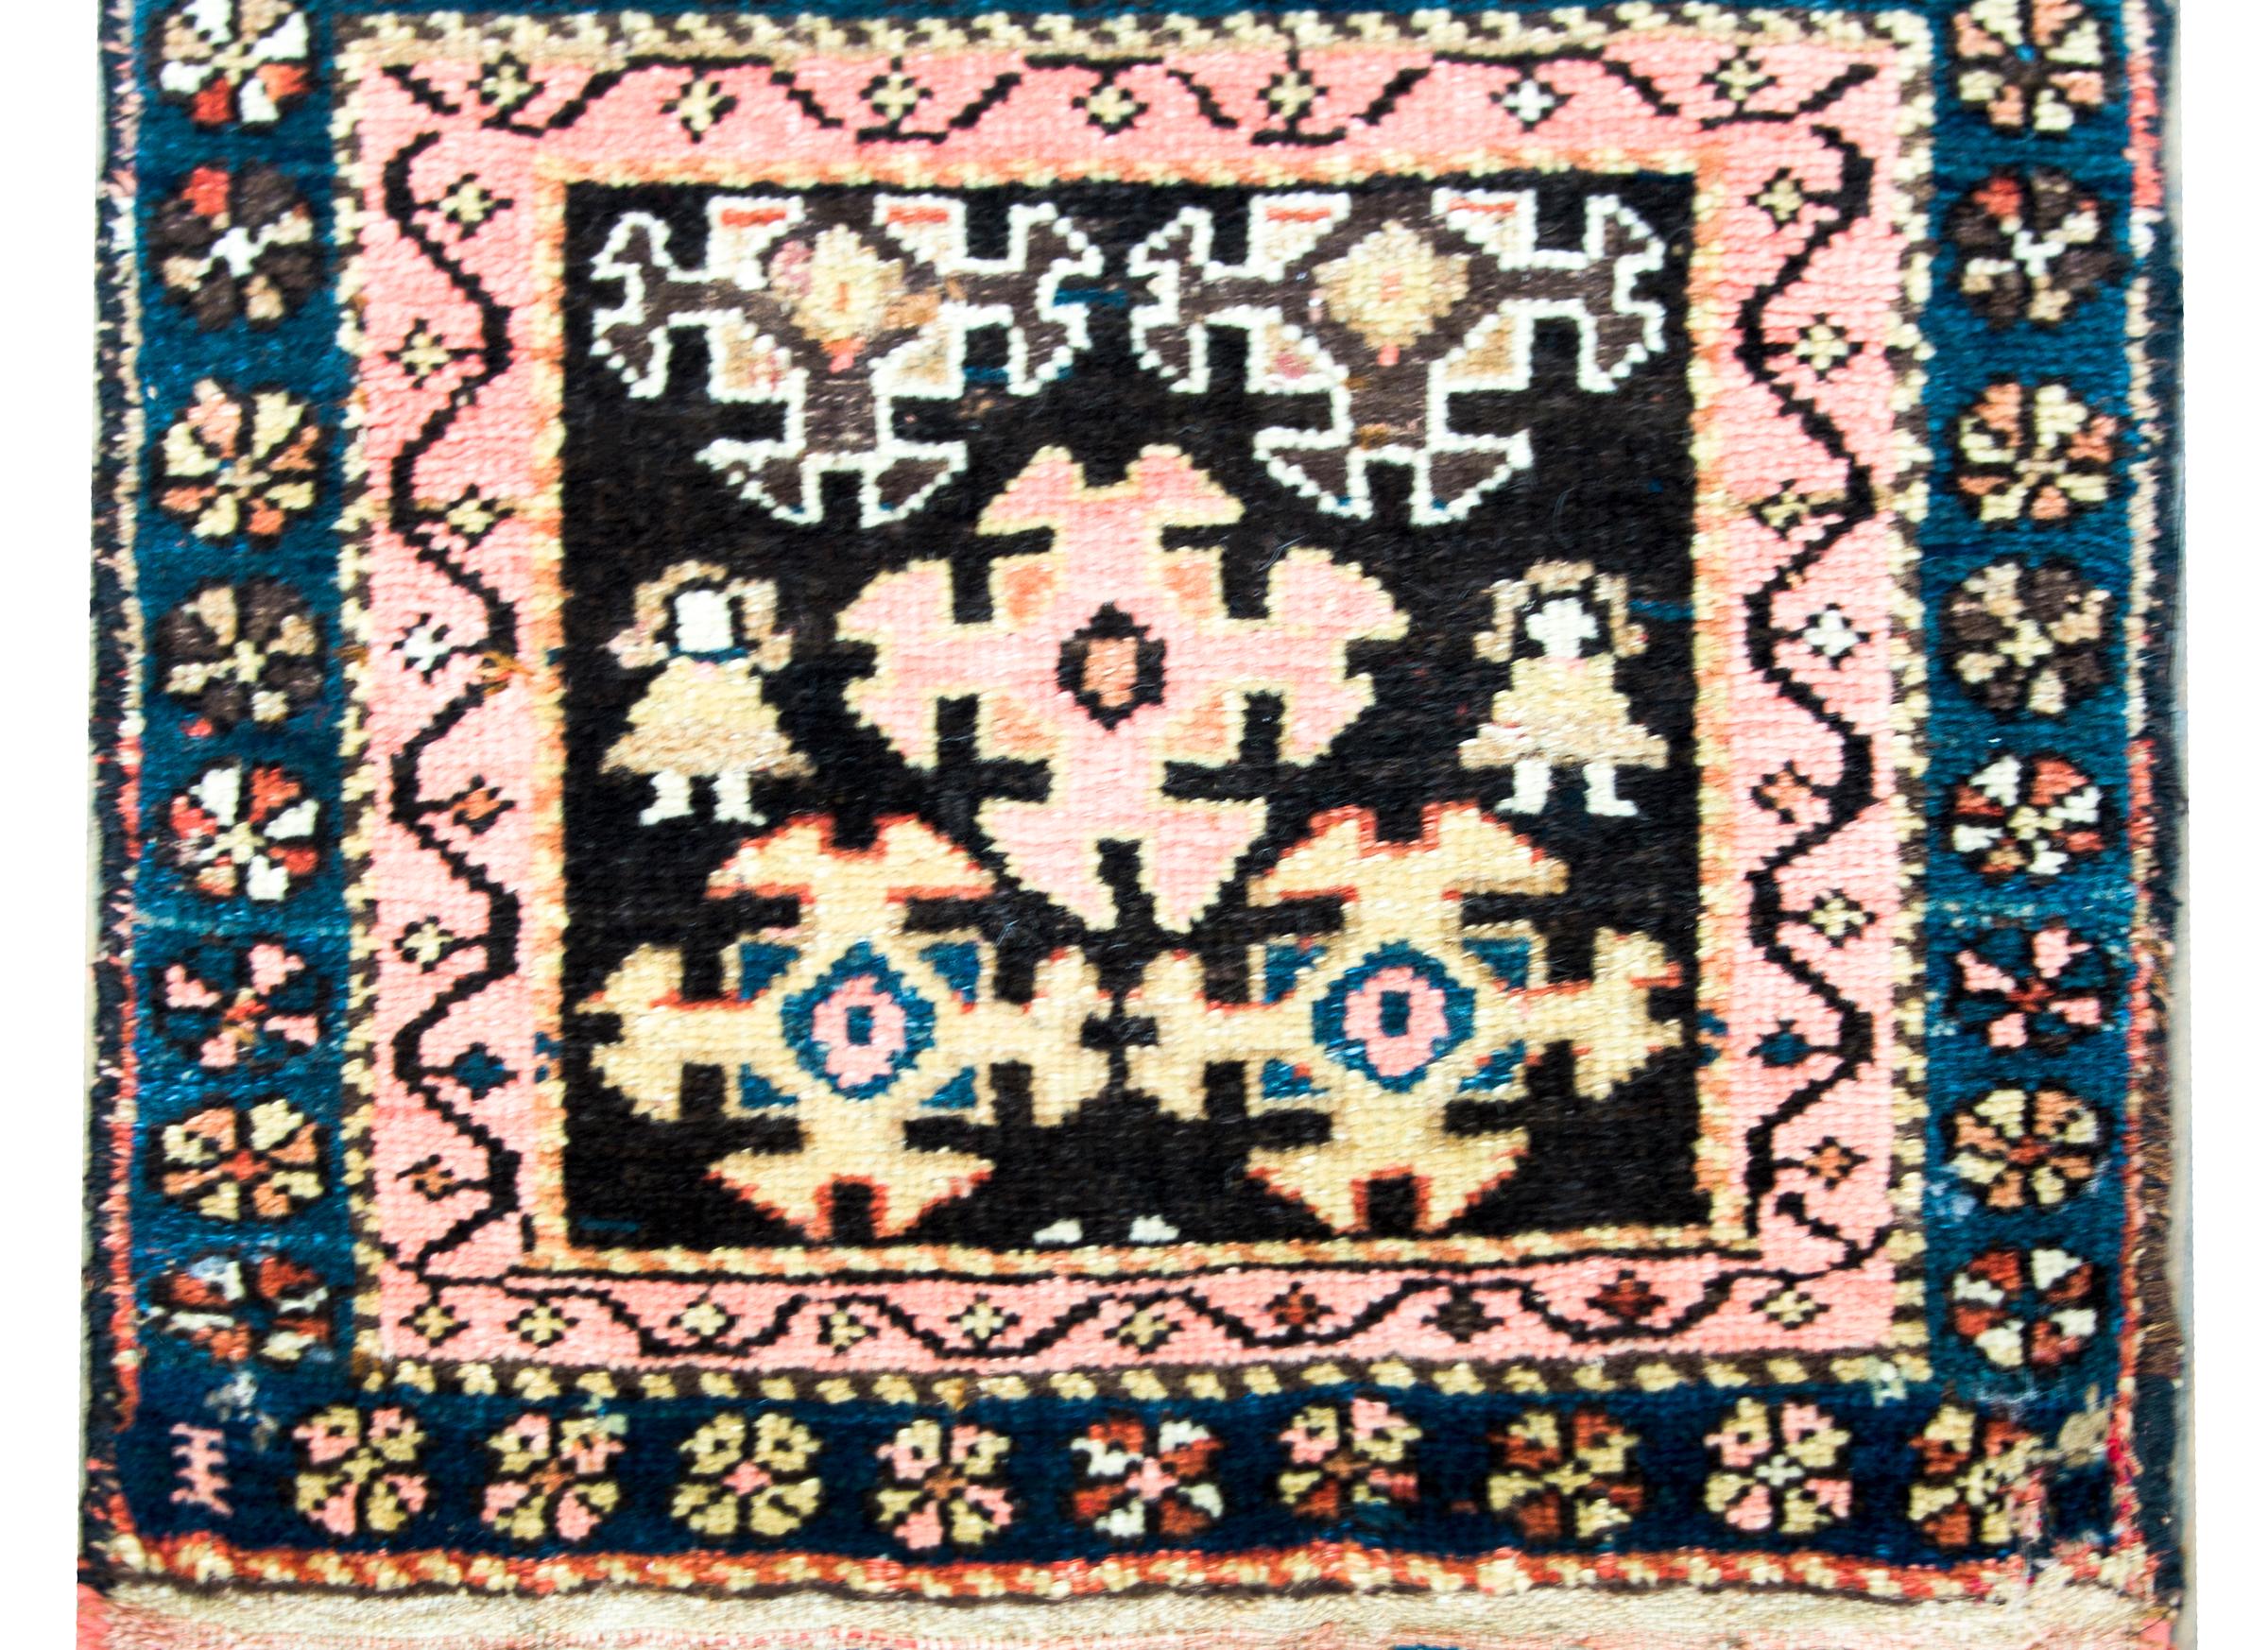 Remarquable tapis kurde du début du XXe siècle avec plusieurs fleurs stylisées tissées en rose, jaune et indigo, sur un fond noir, et entouré d'une bordure contenant deux bandes stylisées à motifs floraux tissées dans des couleurs similaires à